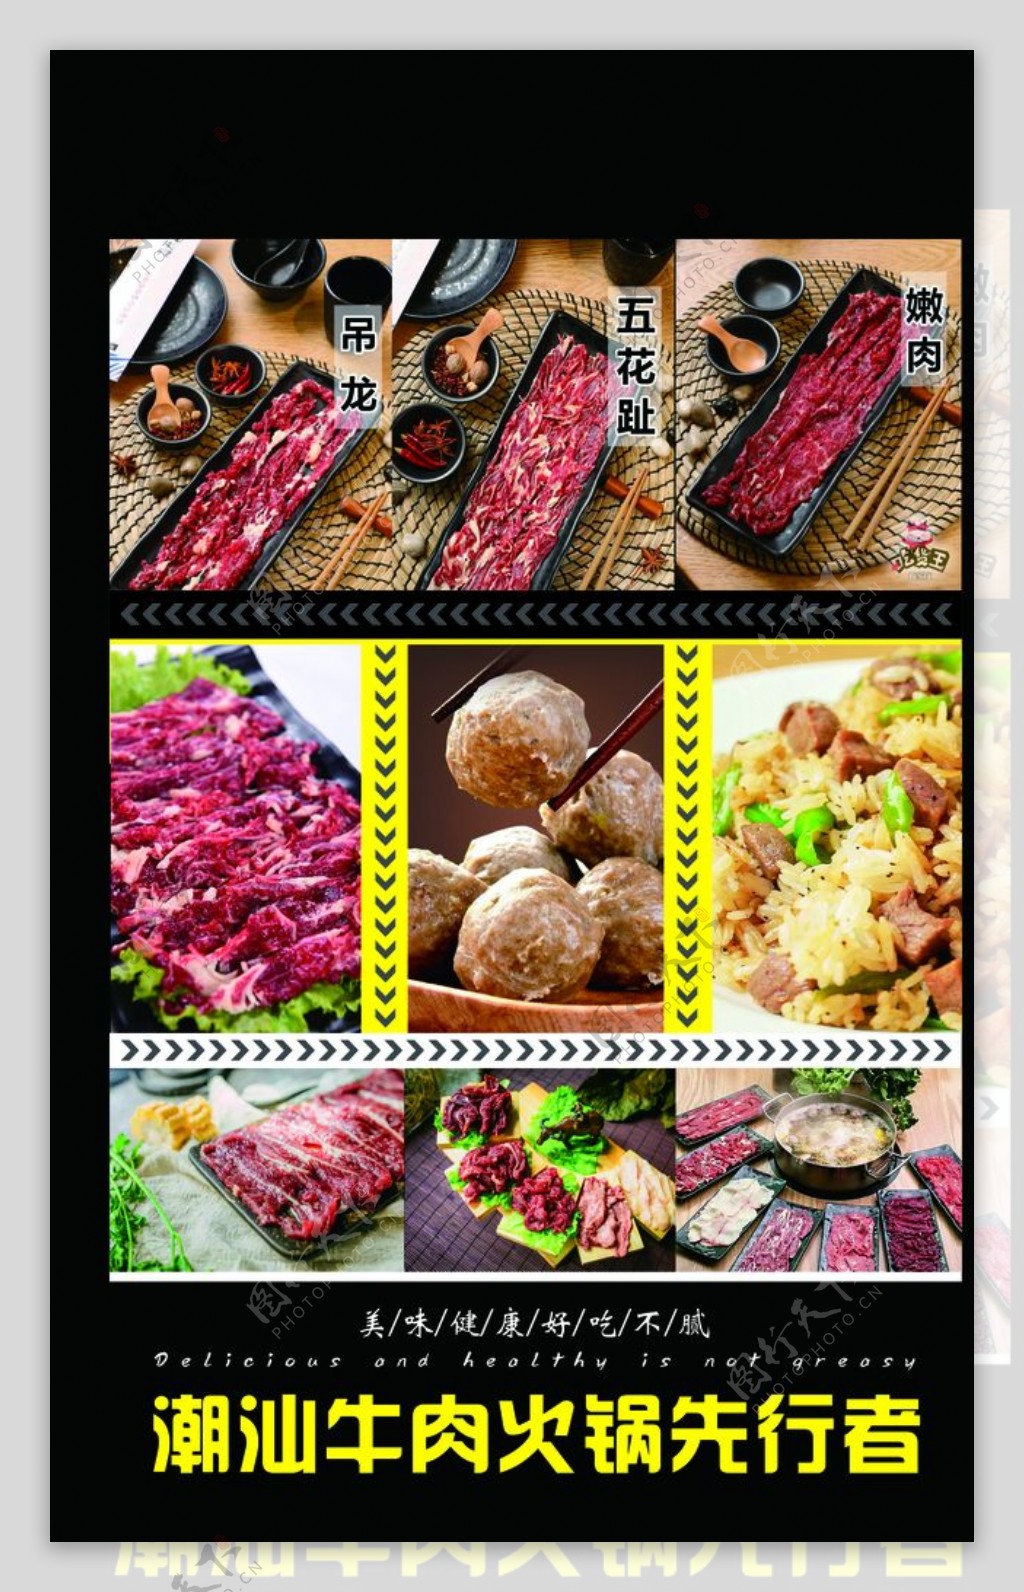 潮汕牛肉图片